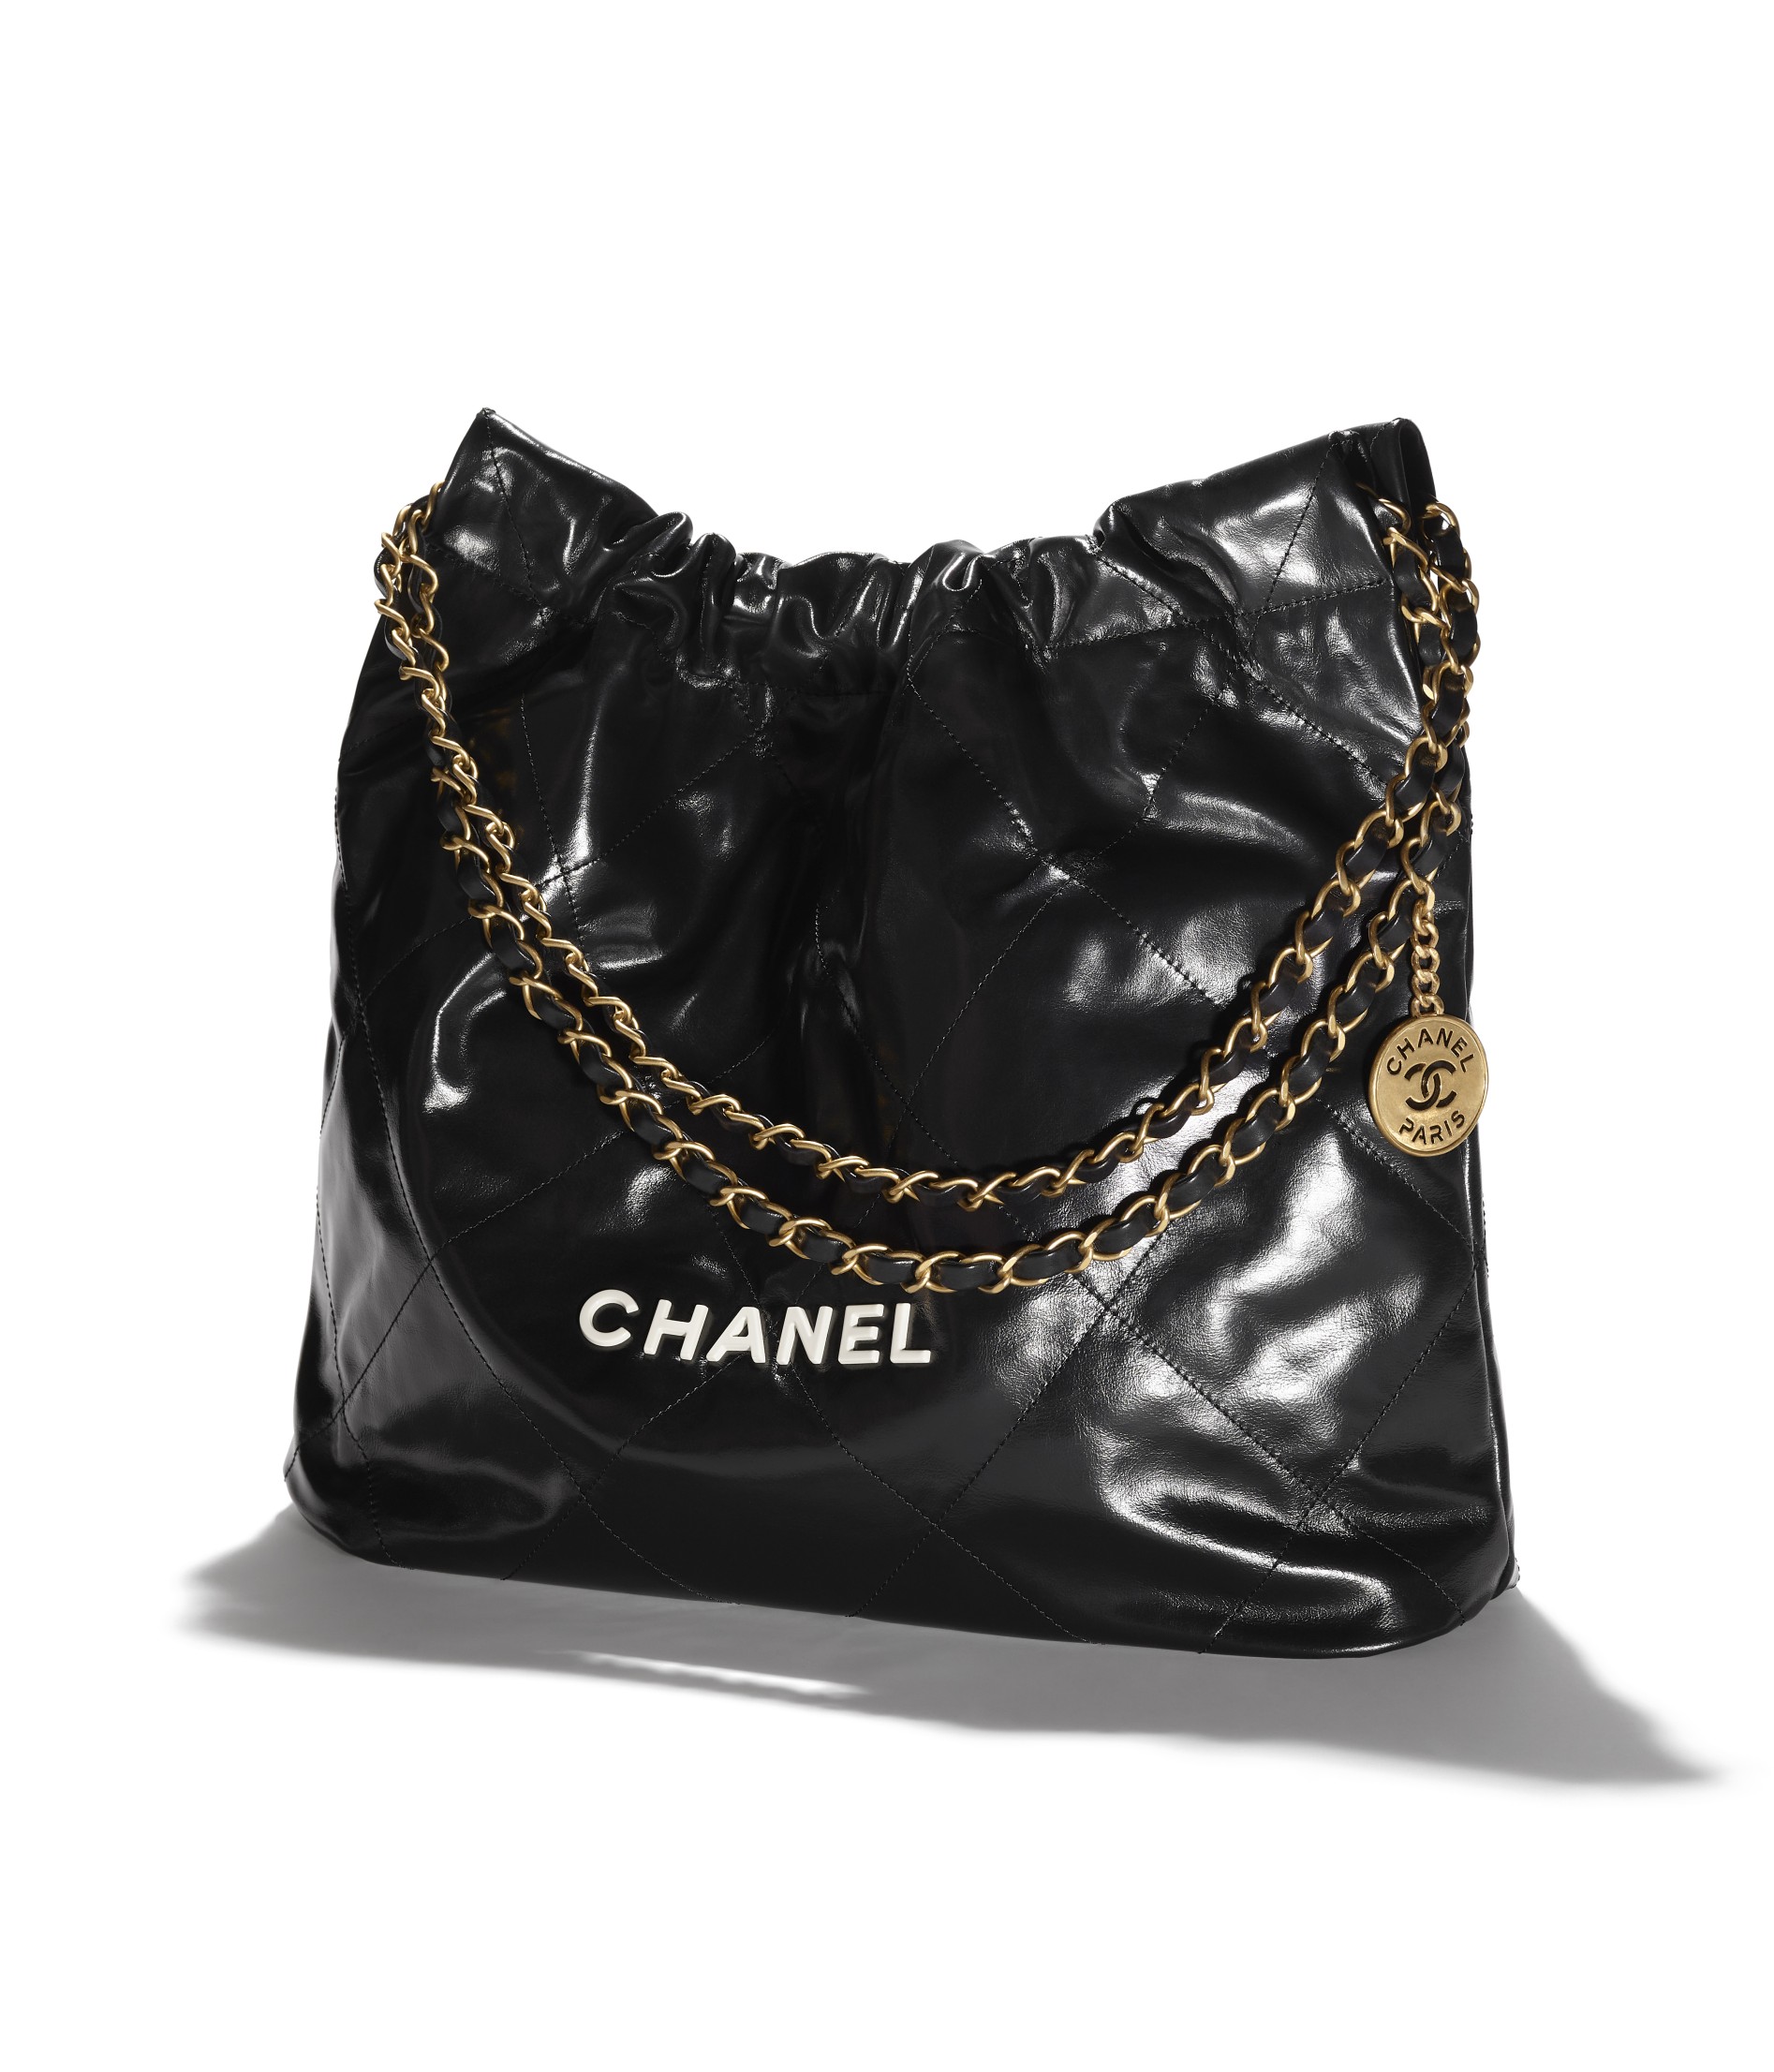 กระเป๋ารุ่น 'CHANEL 22' จากแบรนด์ CHANEL โดยฝีมือการสร้างสรรค์ของ Virginie Viard